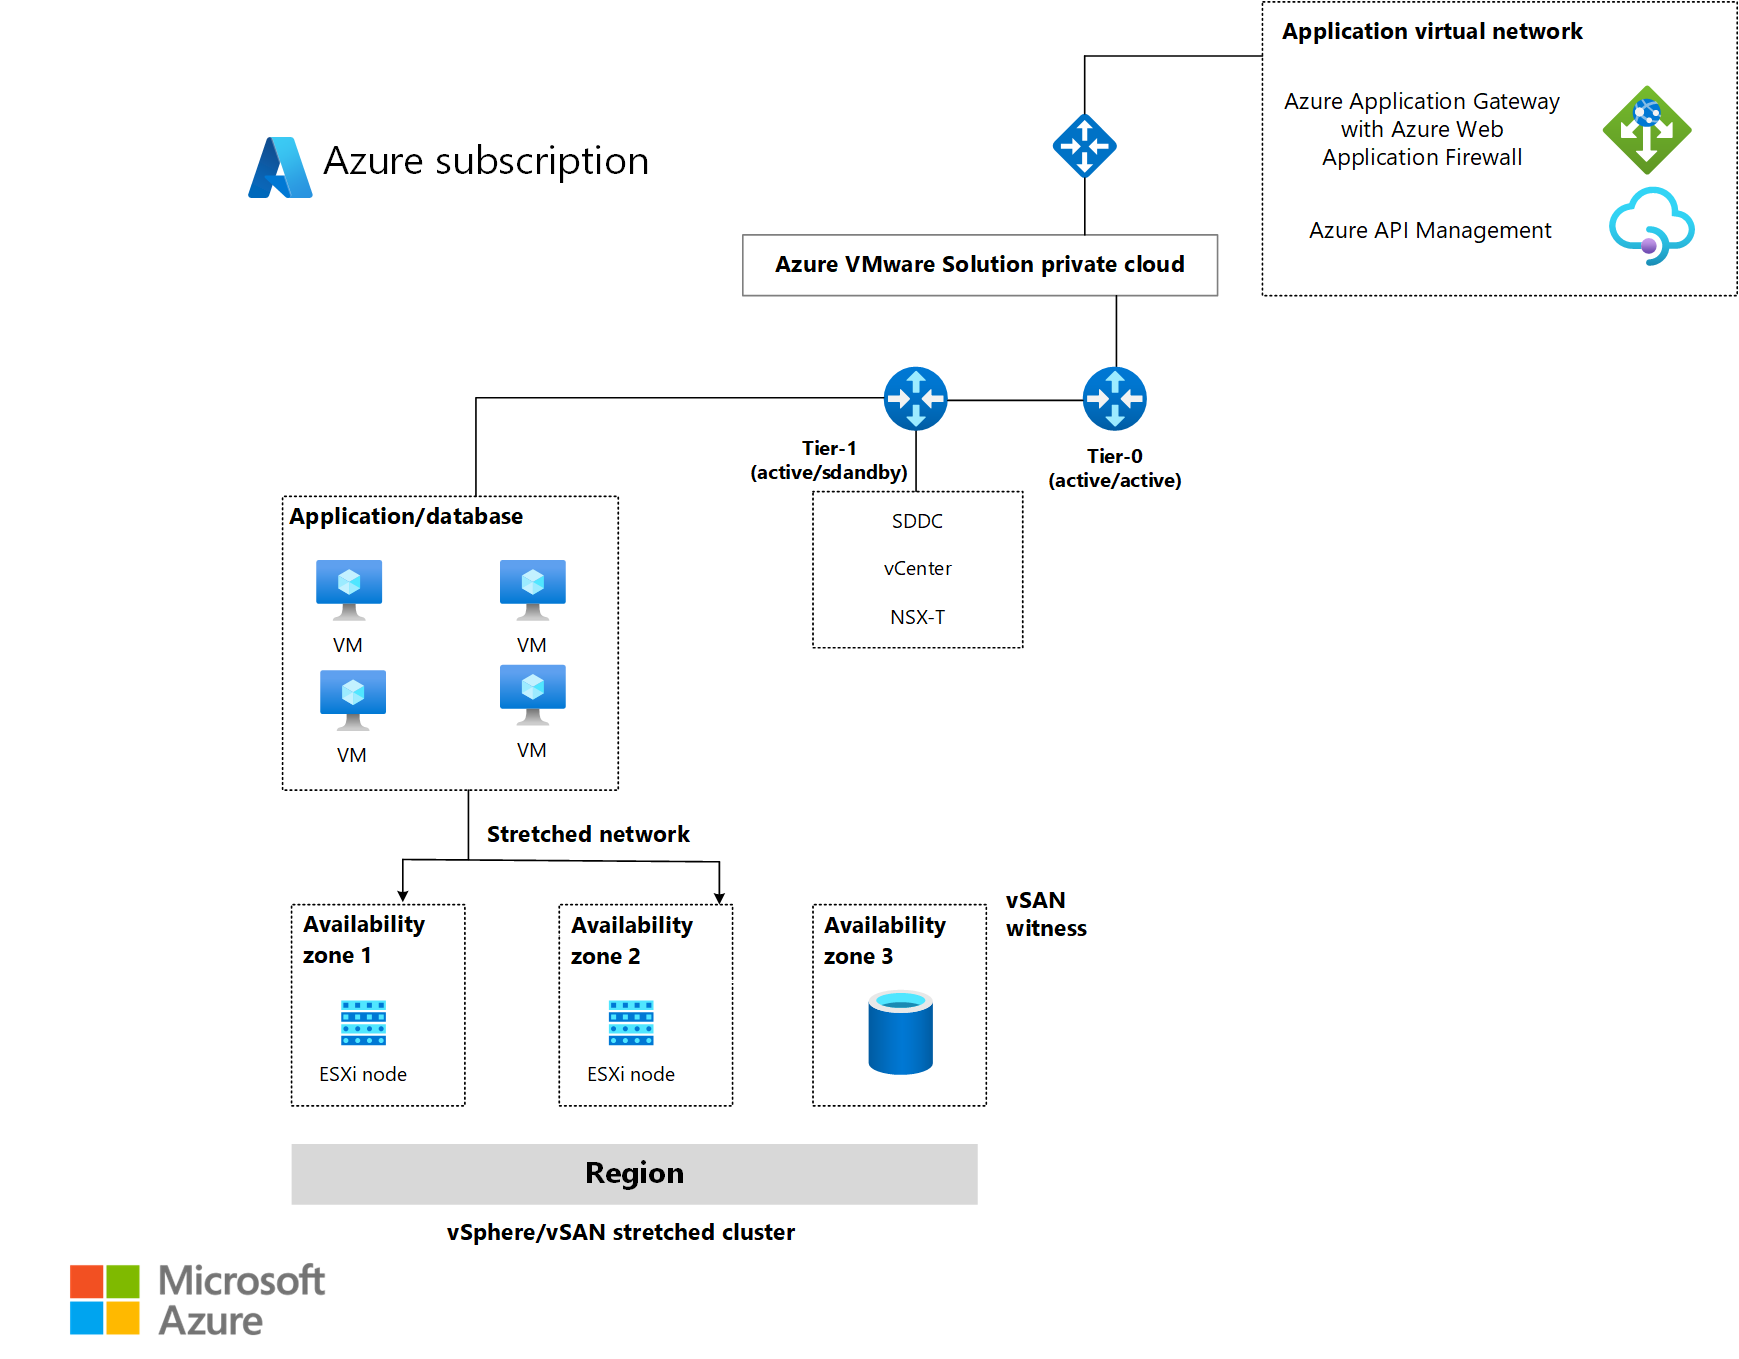 Azure VMware Solution 계층 및 확장된 네트워크를 사용하는 방법을 보여 주는 아키텍처 다이어그램